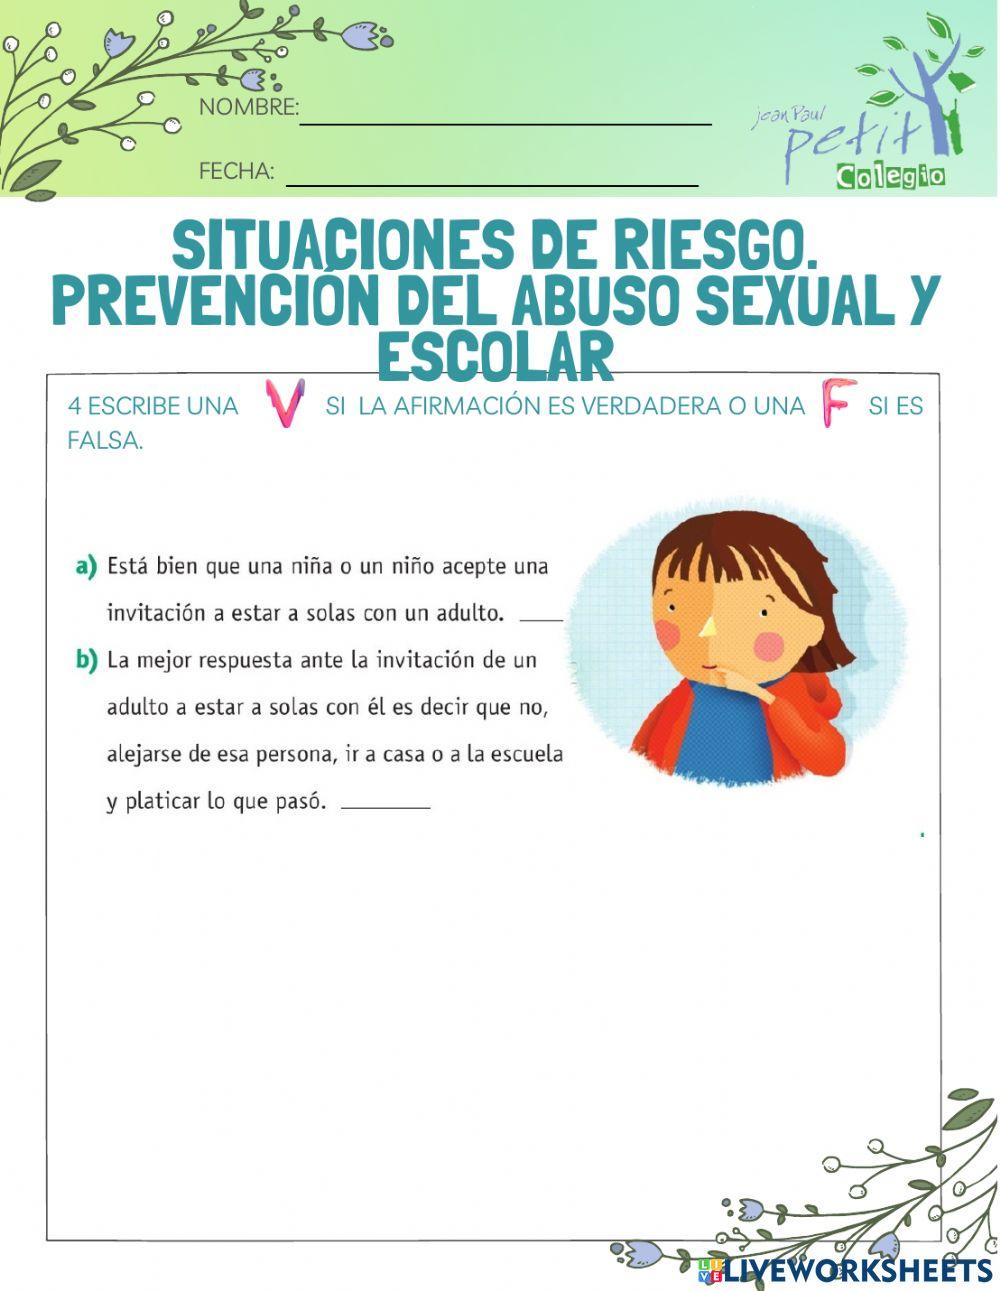 Situaciones de riesgo. Prevención del abuso sexual y escolar